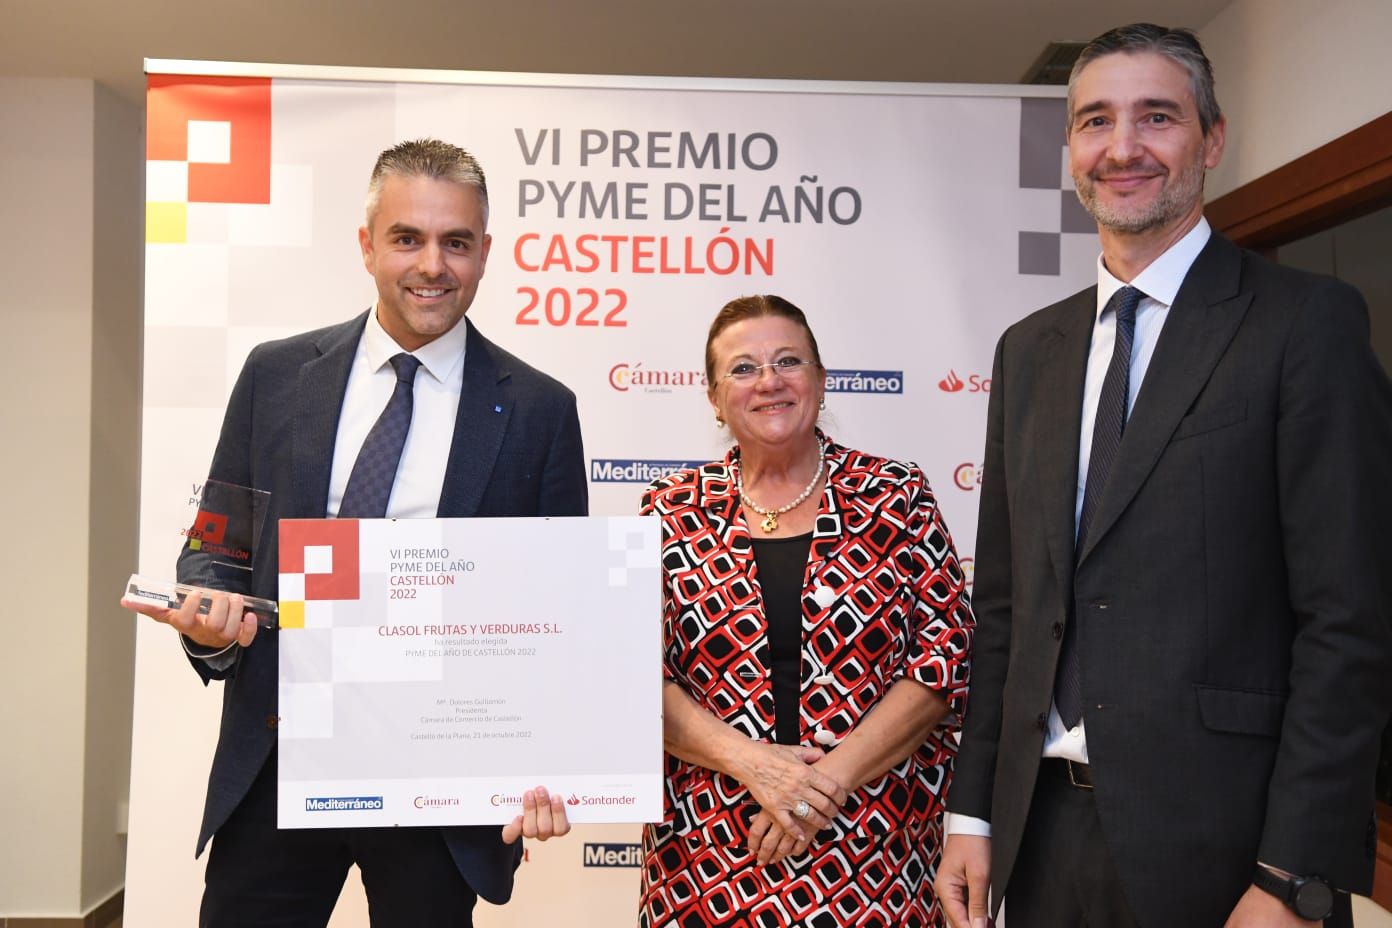 Premio Pyme del año 2022: Todas las imágenes de los premiados en la Cámara de Comercio de Castellón